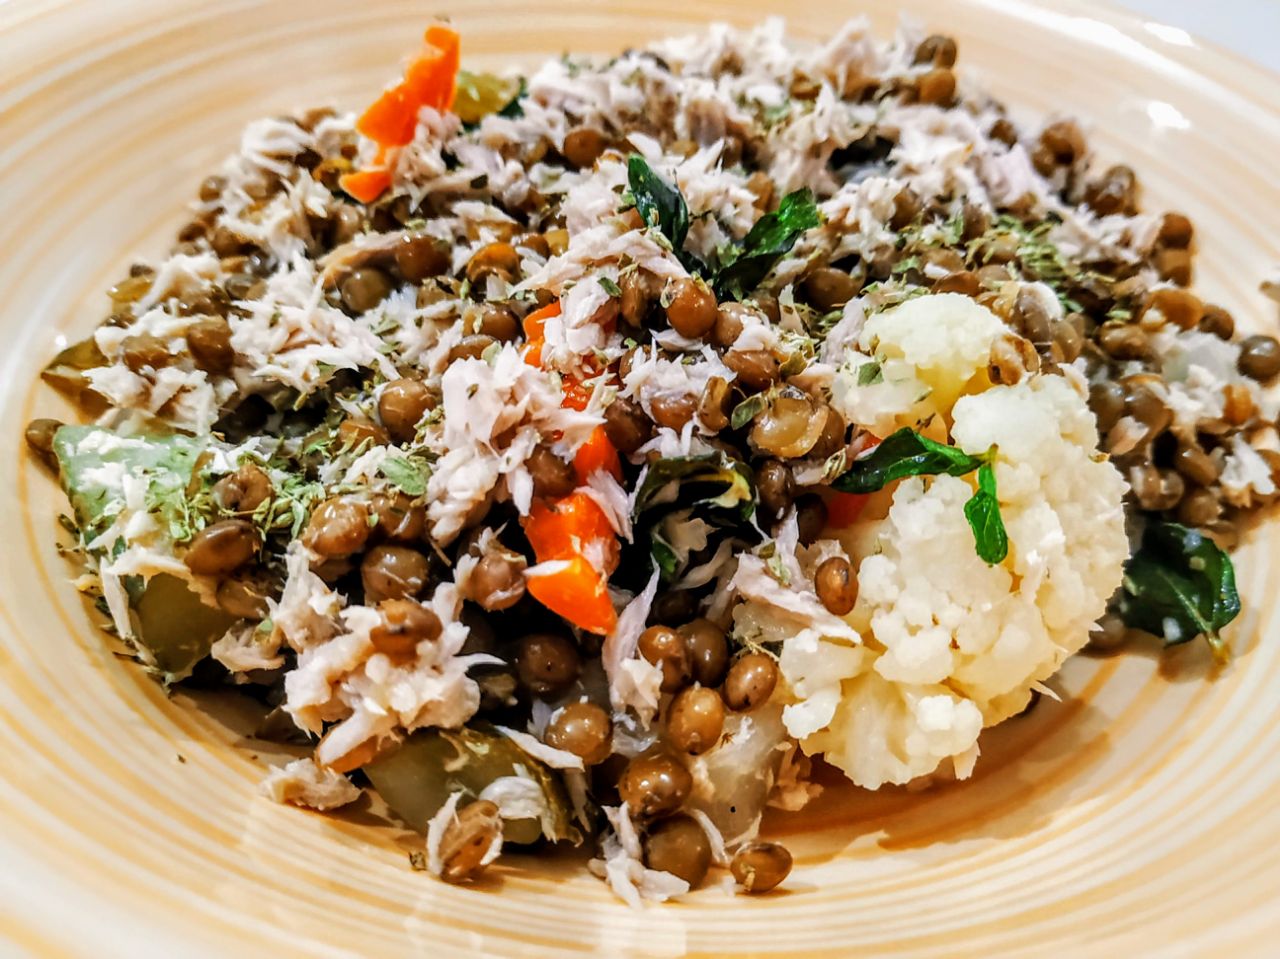 Ricette senza glutine facili e veloci: insalata di lenticchie con tonno al naturale menta e olio evo